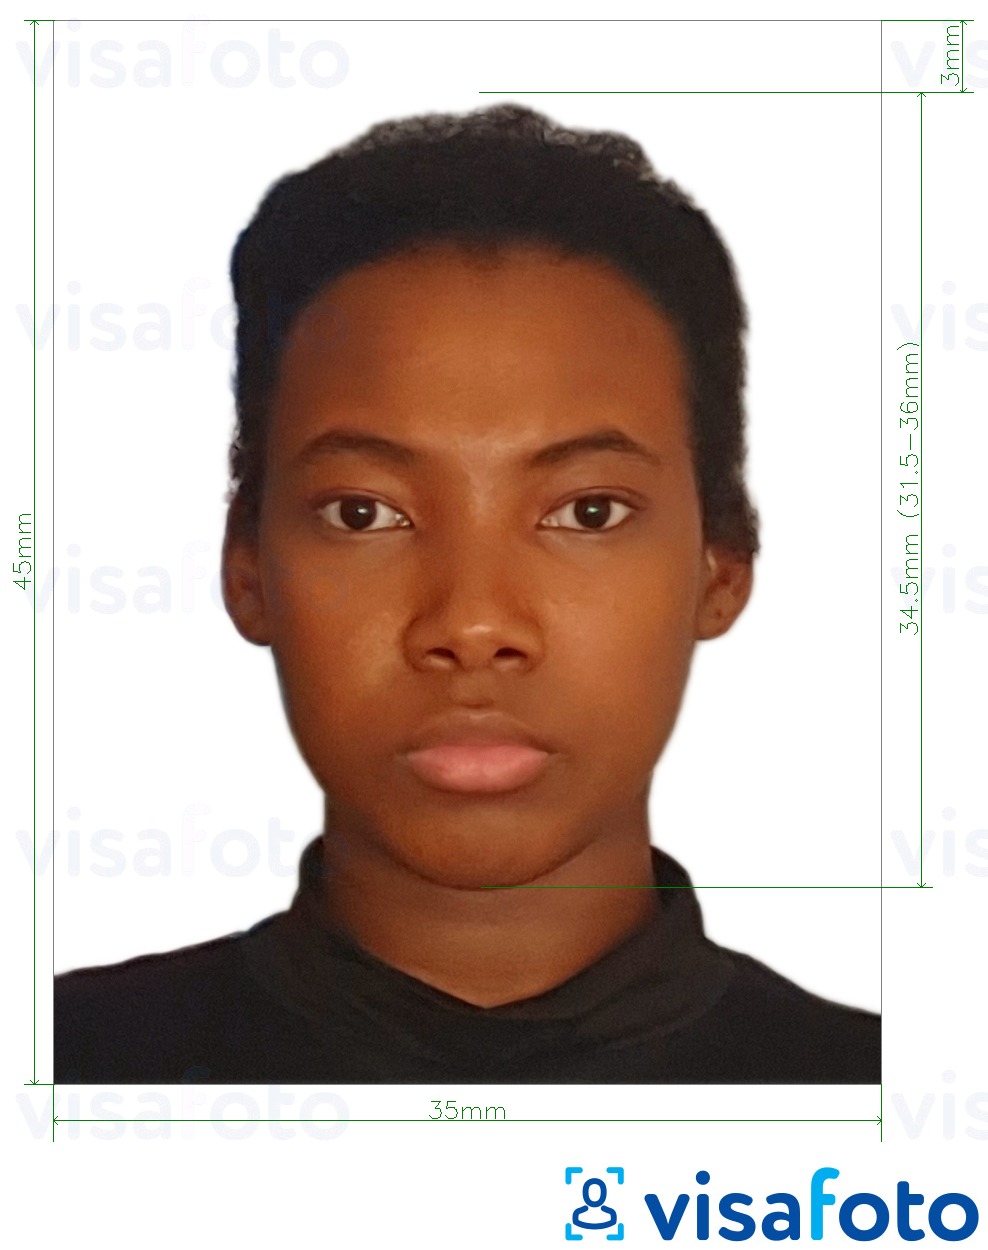 Primjer fotografije za Ekvatorska Gvineja viza 35x45 mm (3,5x4,5 cm) s točno određenom veličinom